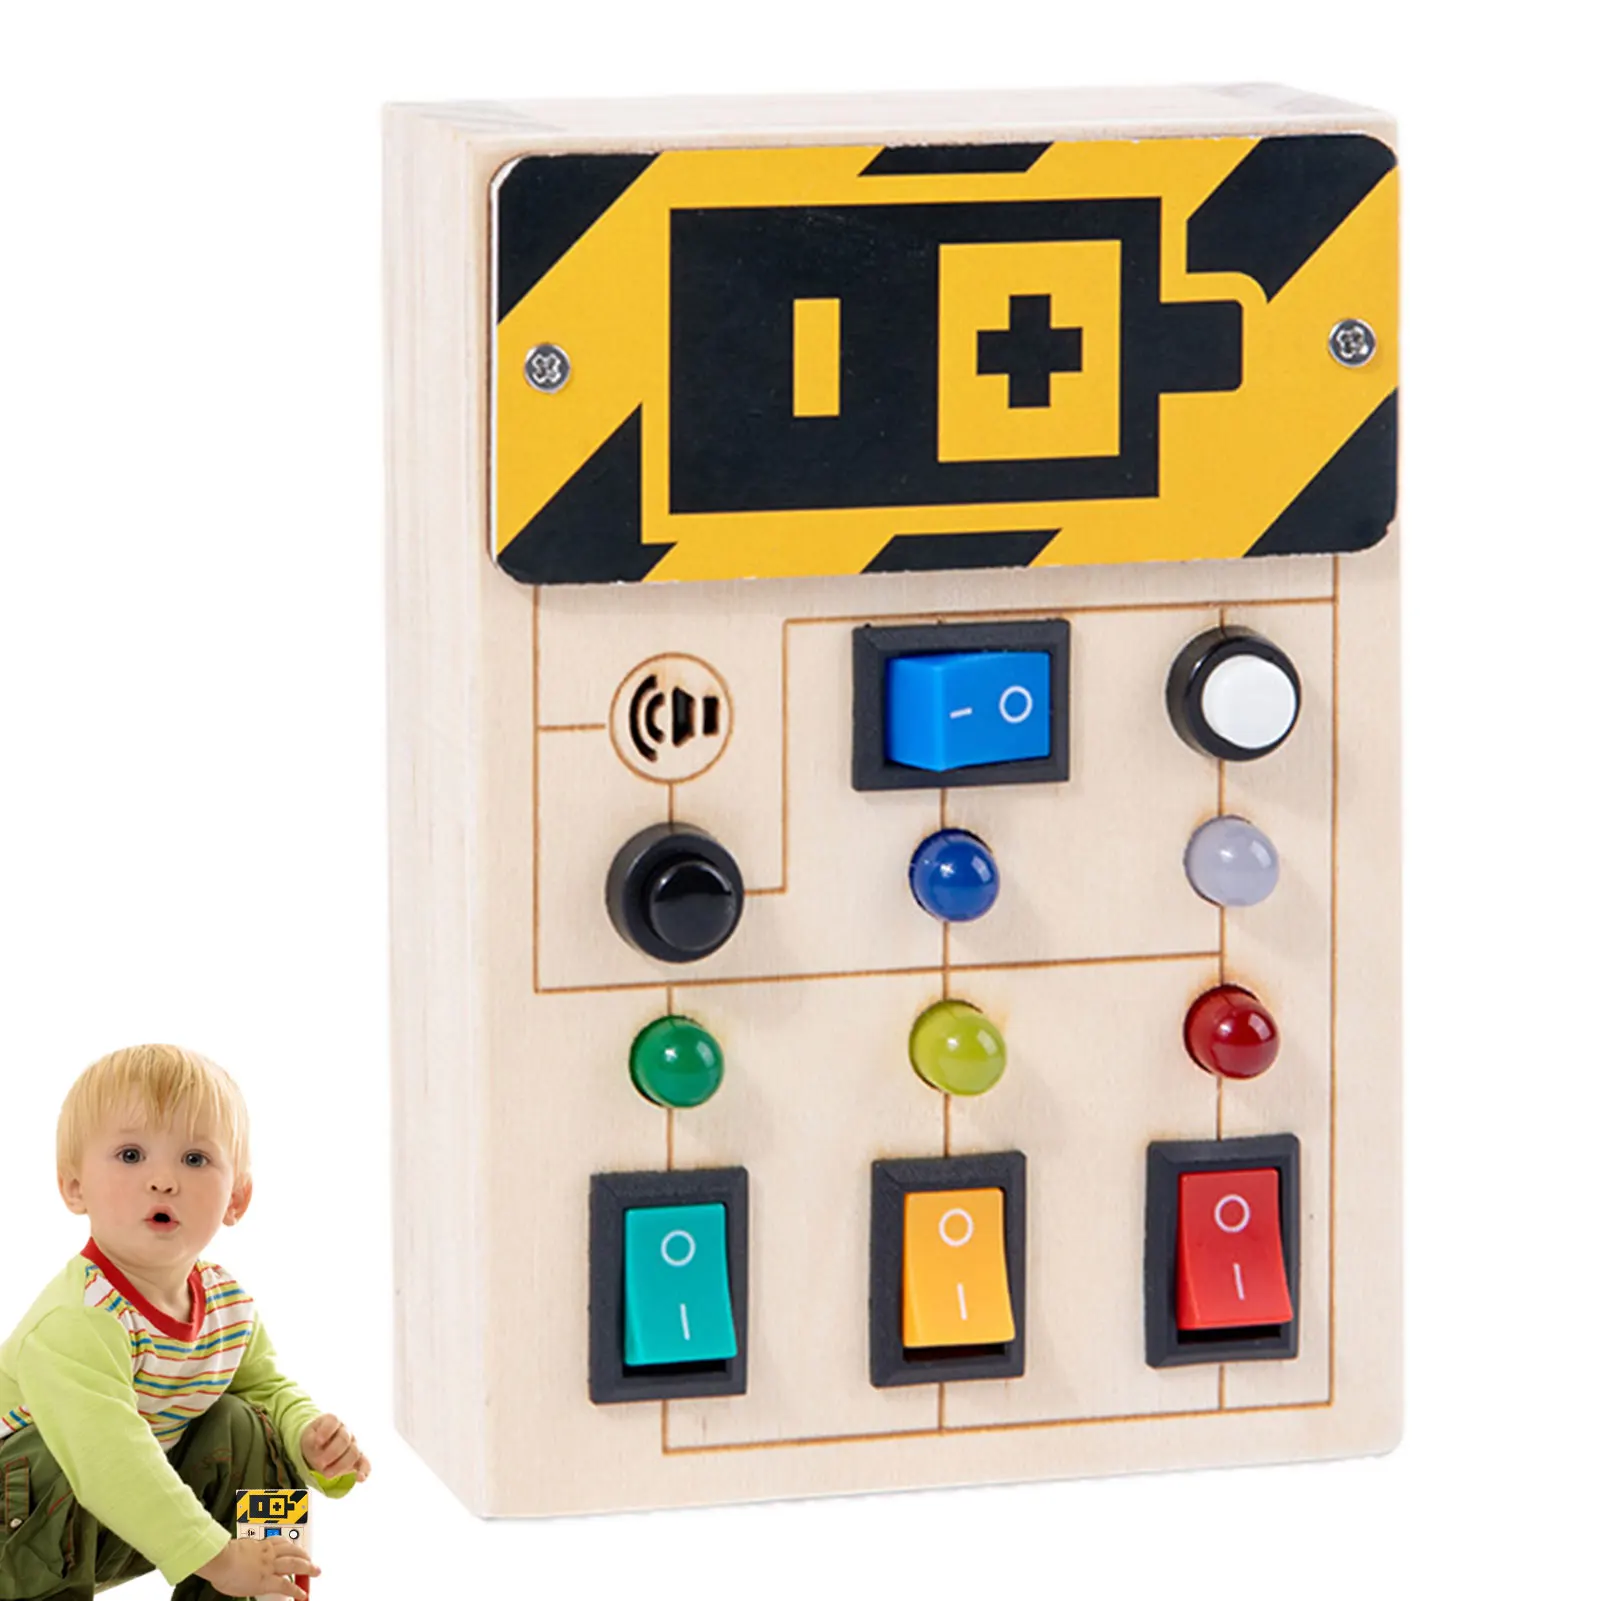 

Светодиодный светильник ключатель света Монтессори, сенсорные игрушки для малышей, обучающая игрушка со светодиодным переключателем, заня...